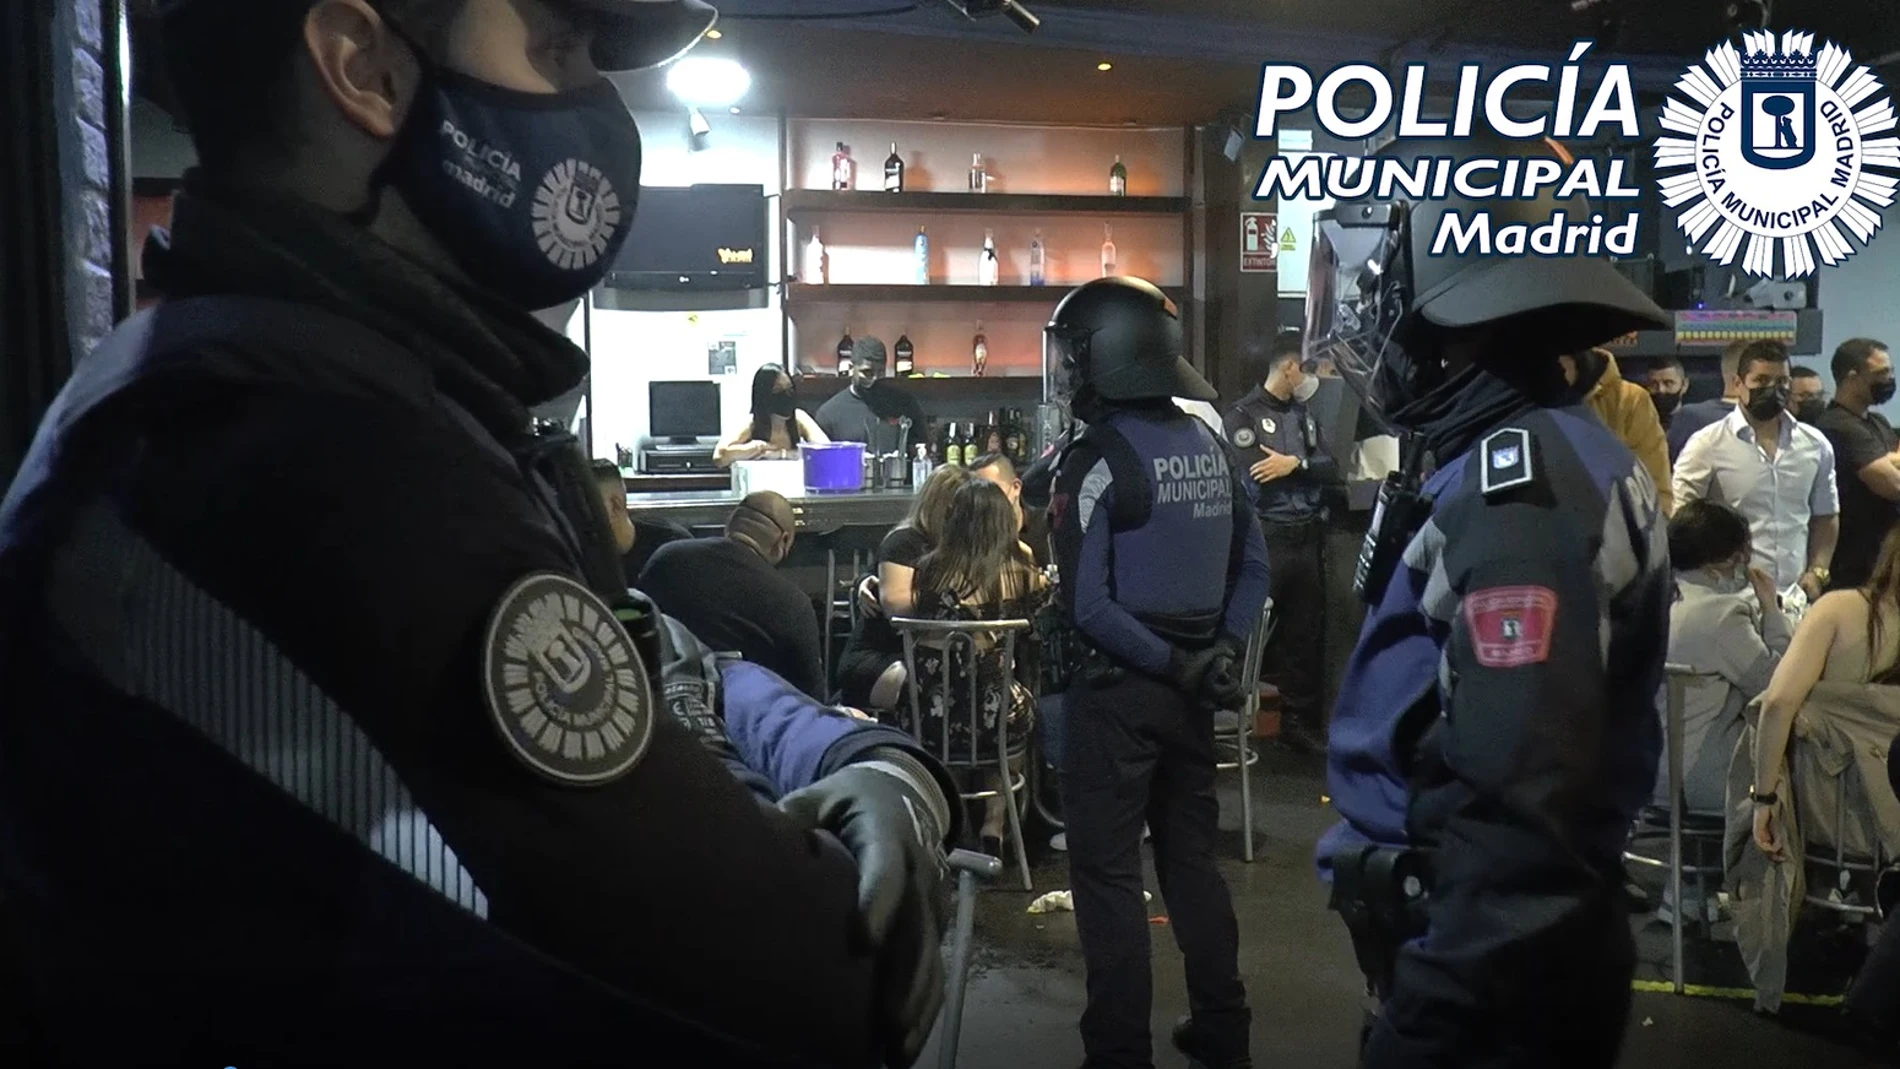 La Policía Municipal de Madrid desmantela una fiesta ilegal